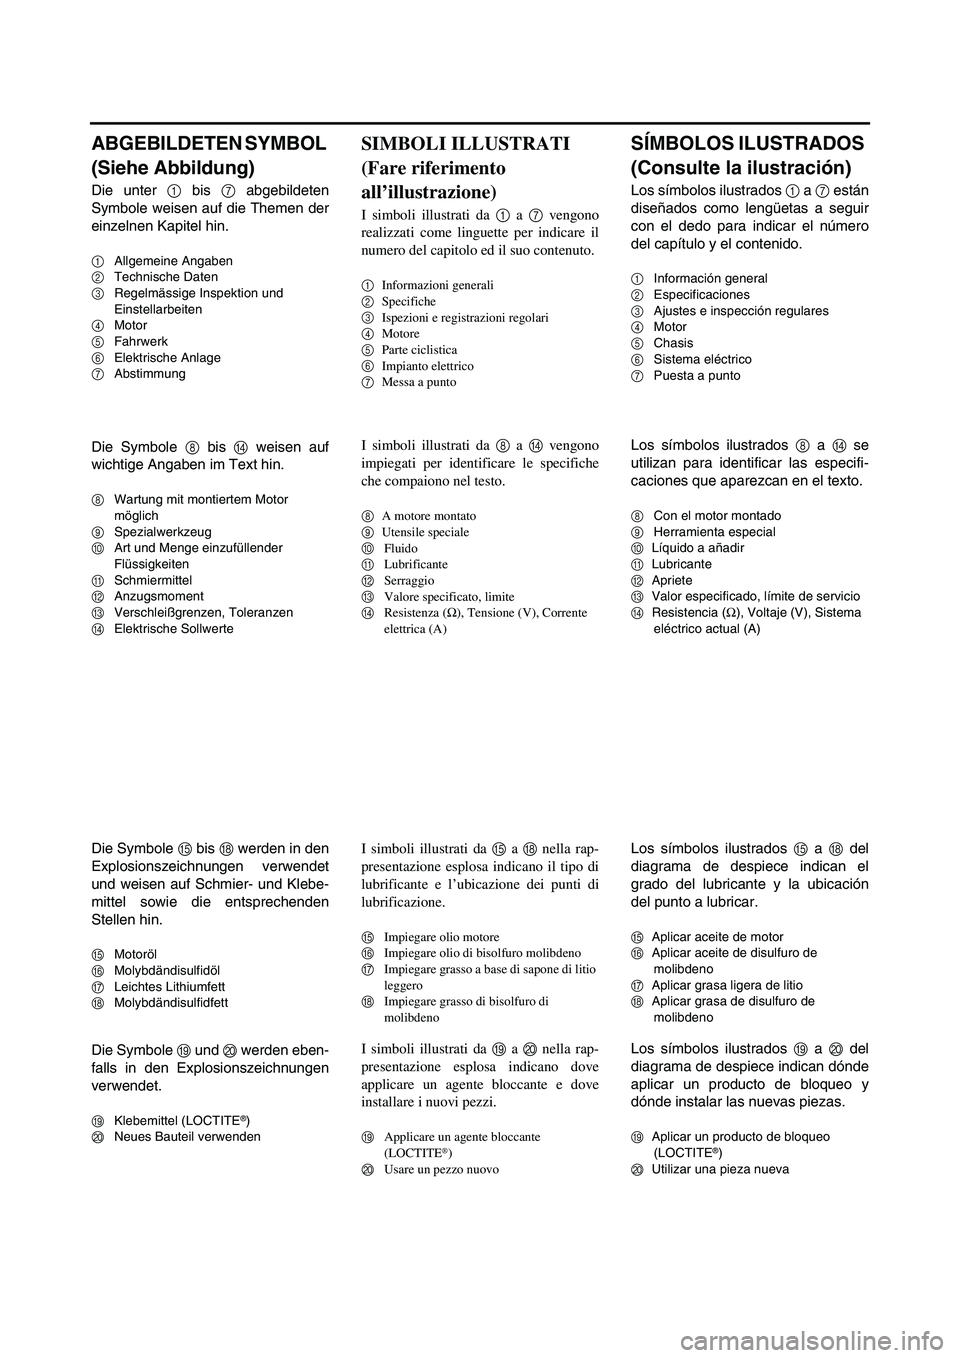 YAMAHA WR 250F 2003  Notices Demploi (in French) ABGEBILDETEN SYMBOL 
(Siehe Abbildung)
Die unter 1 bis 7 abgebildeten
Symbole weisen auf die Themen der
einzelnen Kapitel hin.
1Allgemeine Angaben
2Technische Daten
3Regelmässige Inspektion und 
Eins